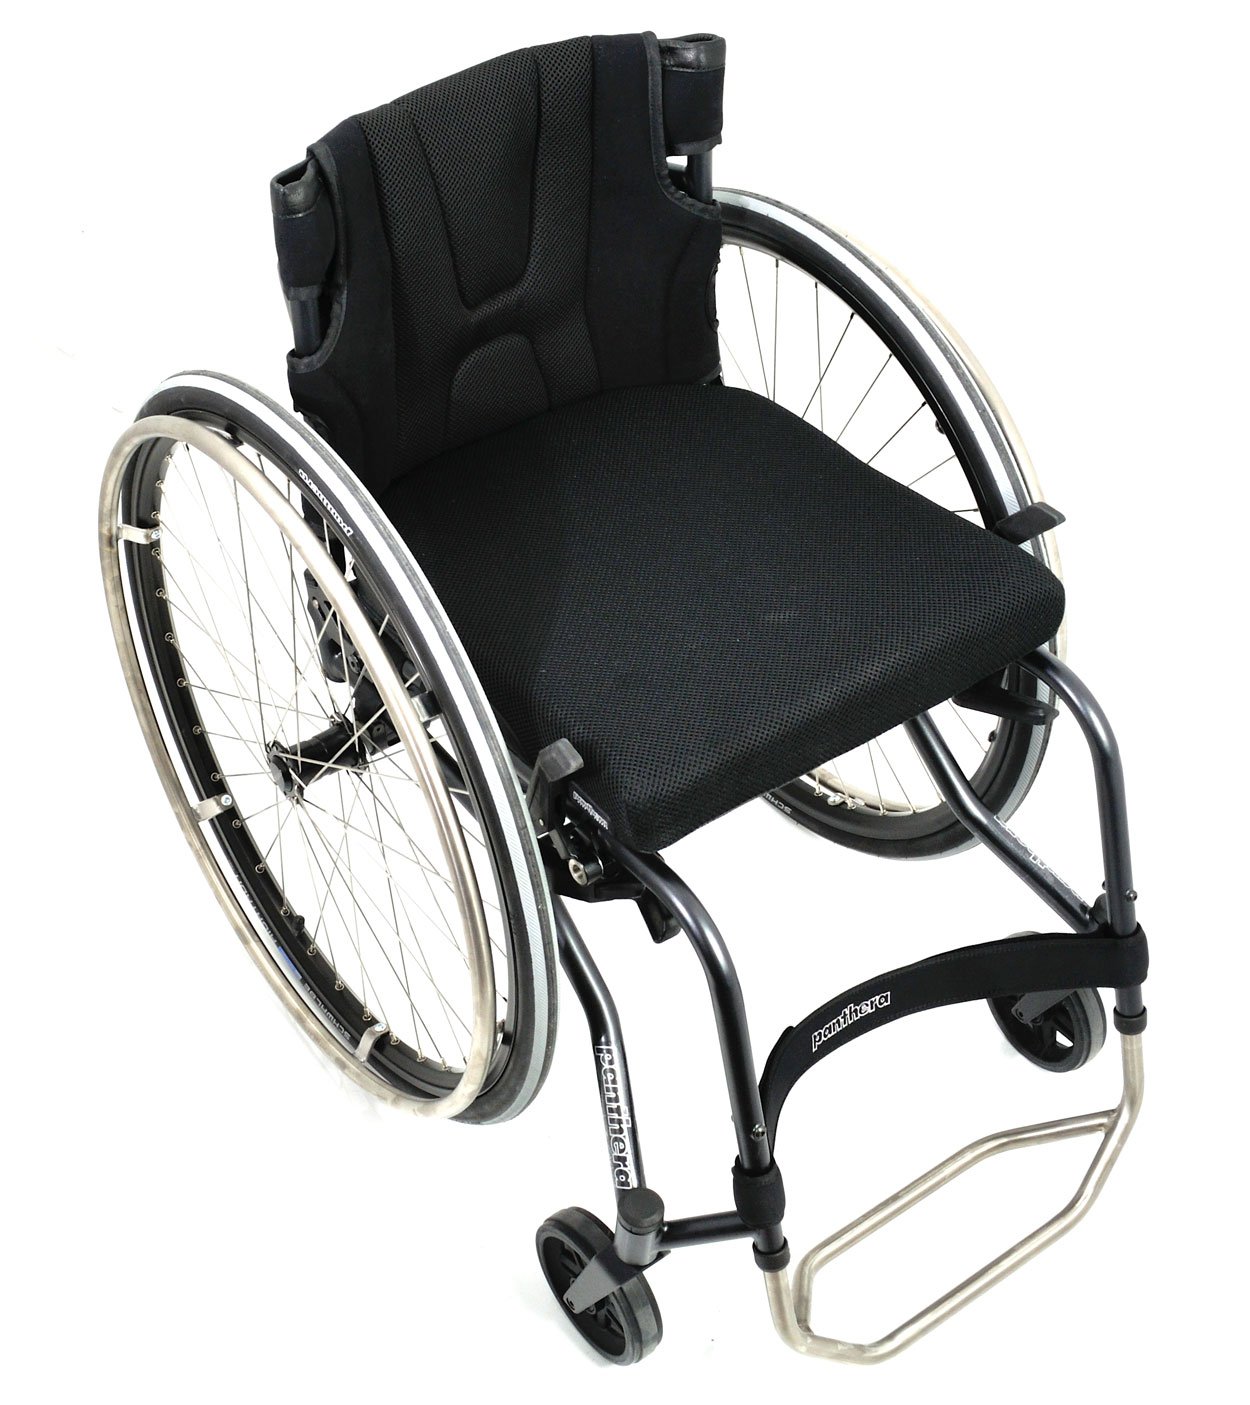 Активная кресло-коляска PANTHERA S3 Short Low